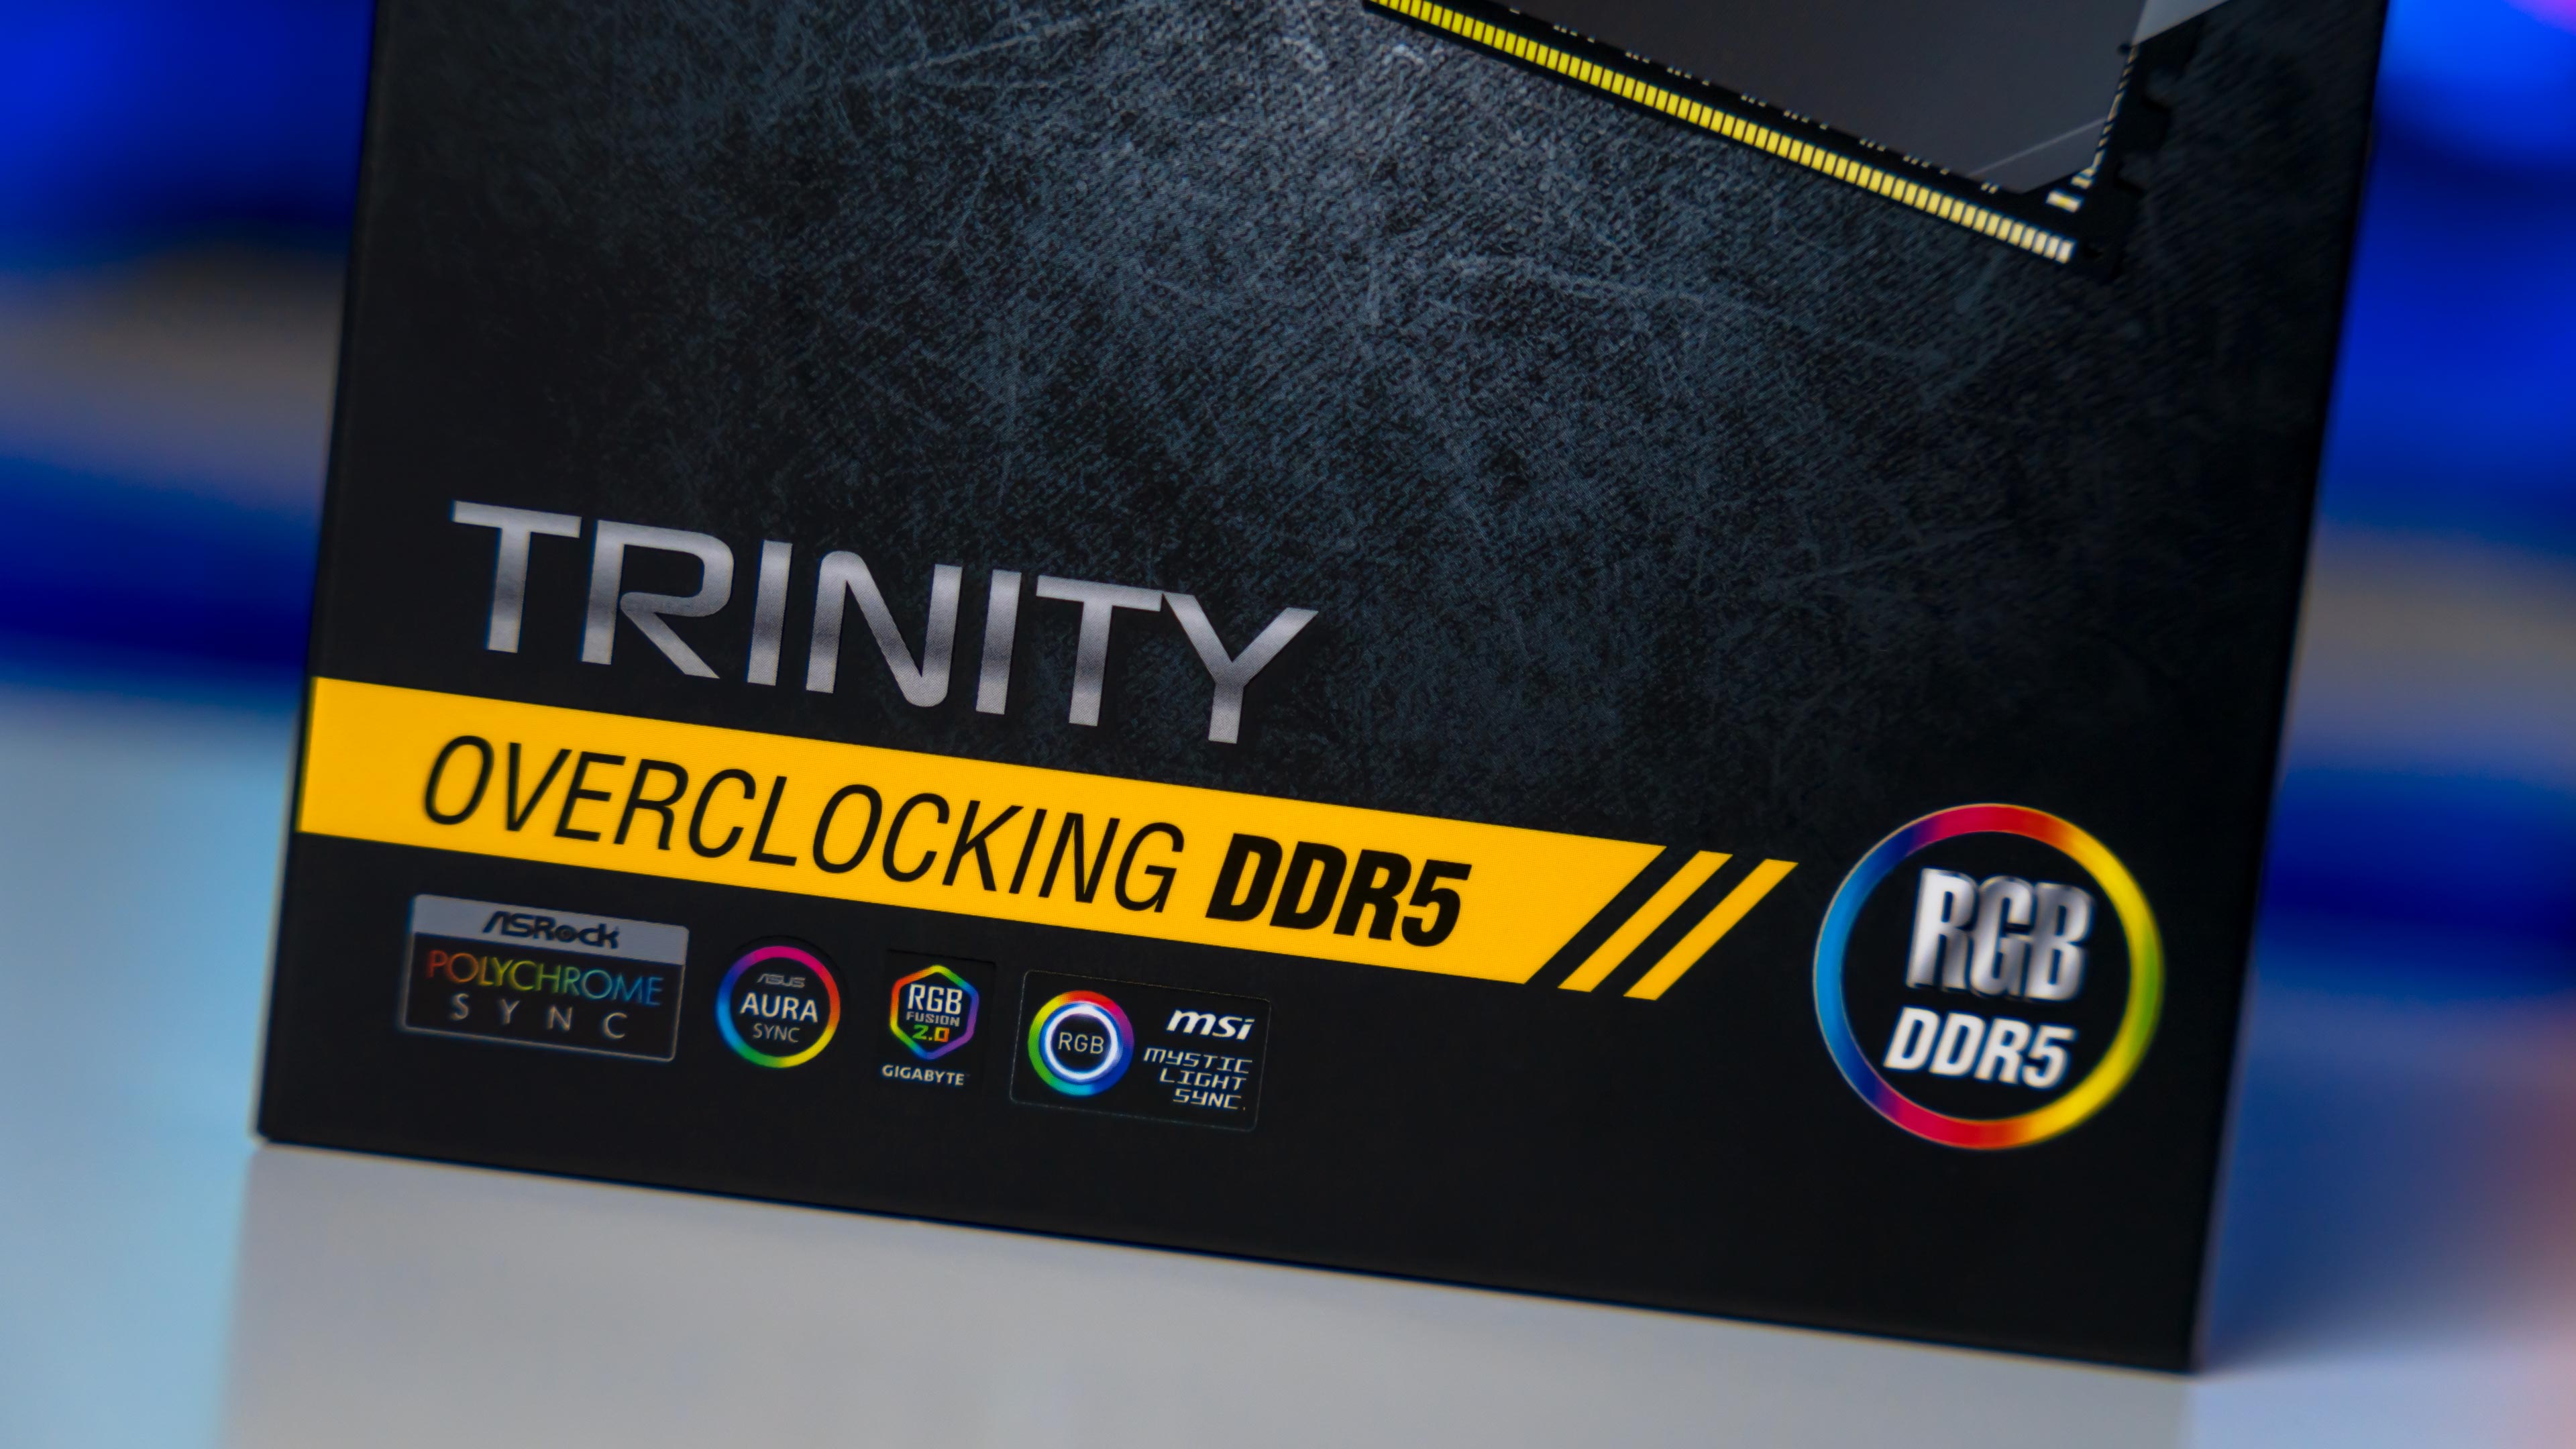 Neo Forza Trinity RGB DDR5 7200Mhz Box (2)